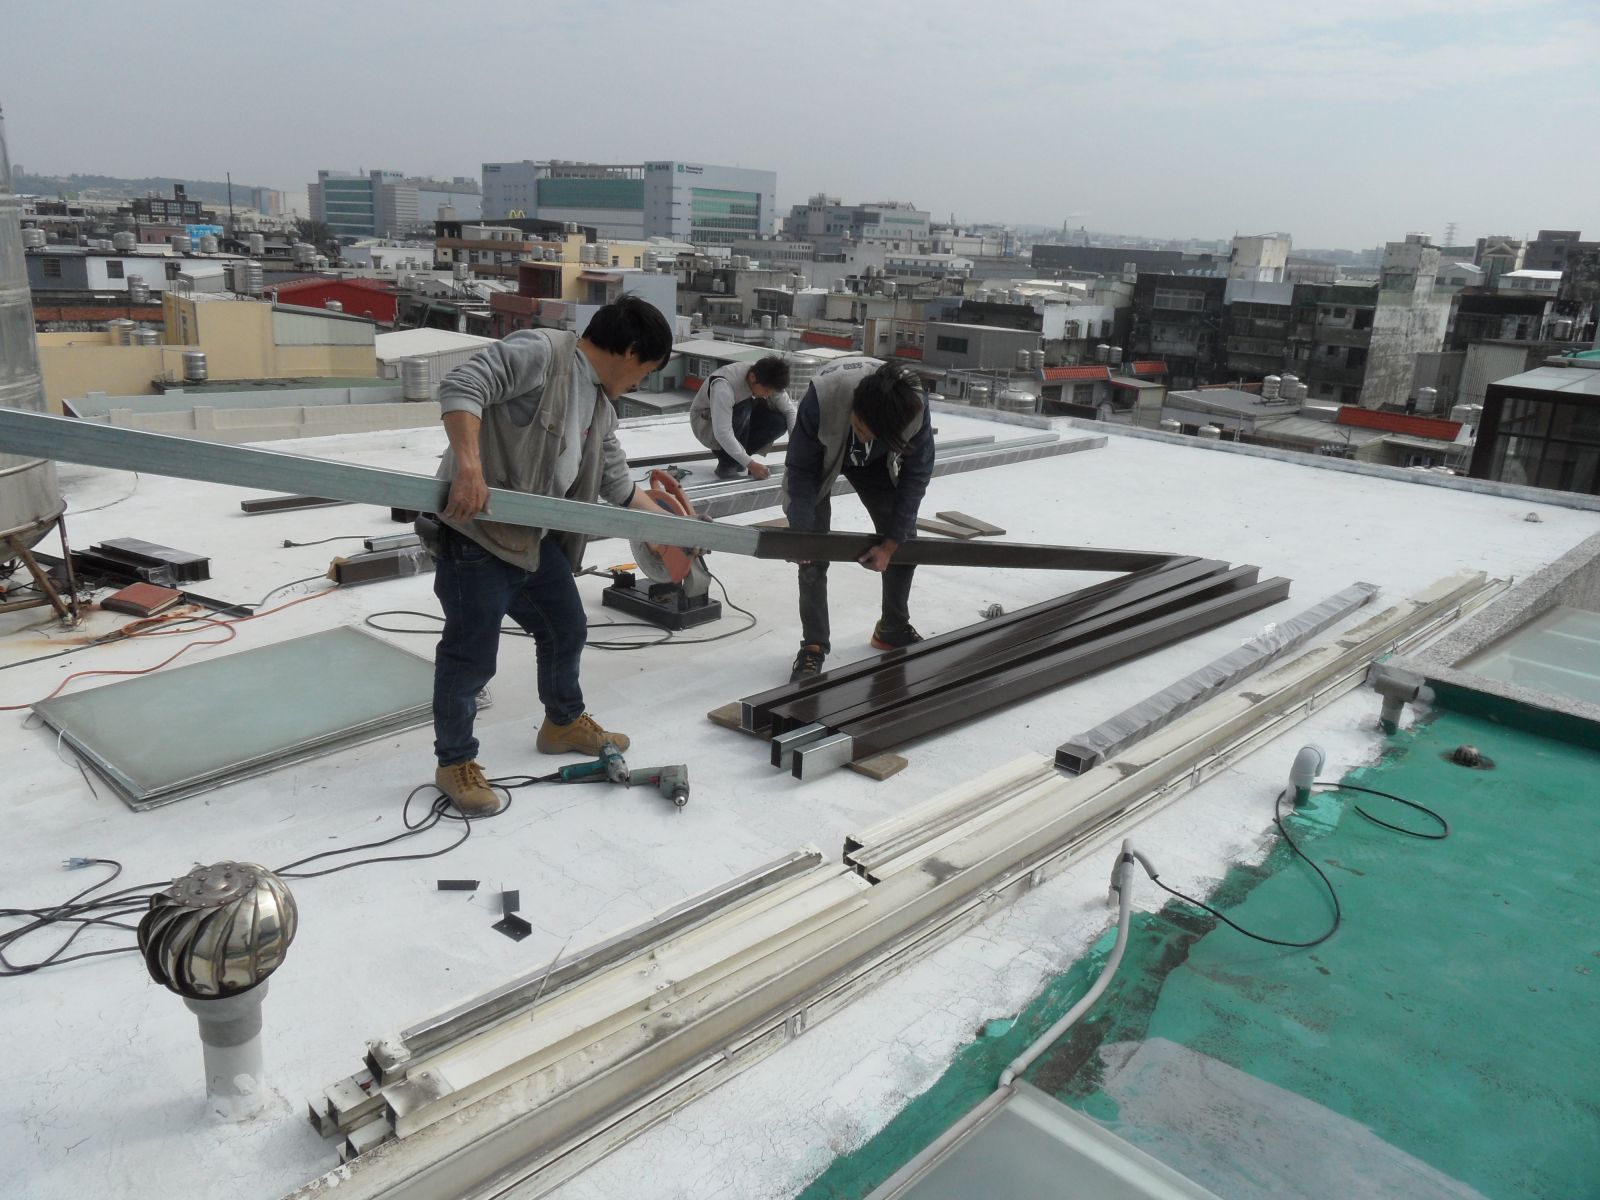 本工程位於頂樓陽台,將材料先吊至最頂樓屋凸,顏色採用咖啡,材質採用雙材質(鋁+鋼)